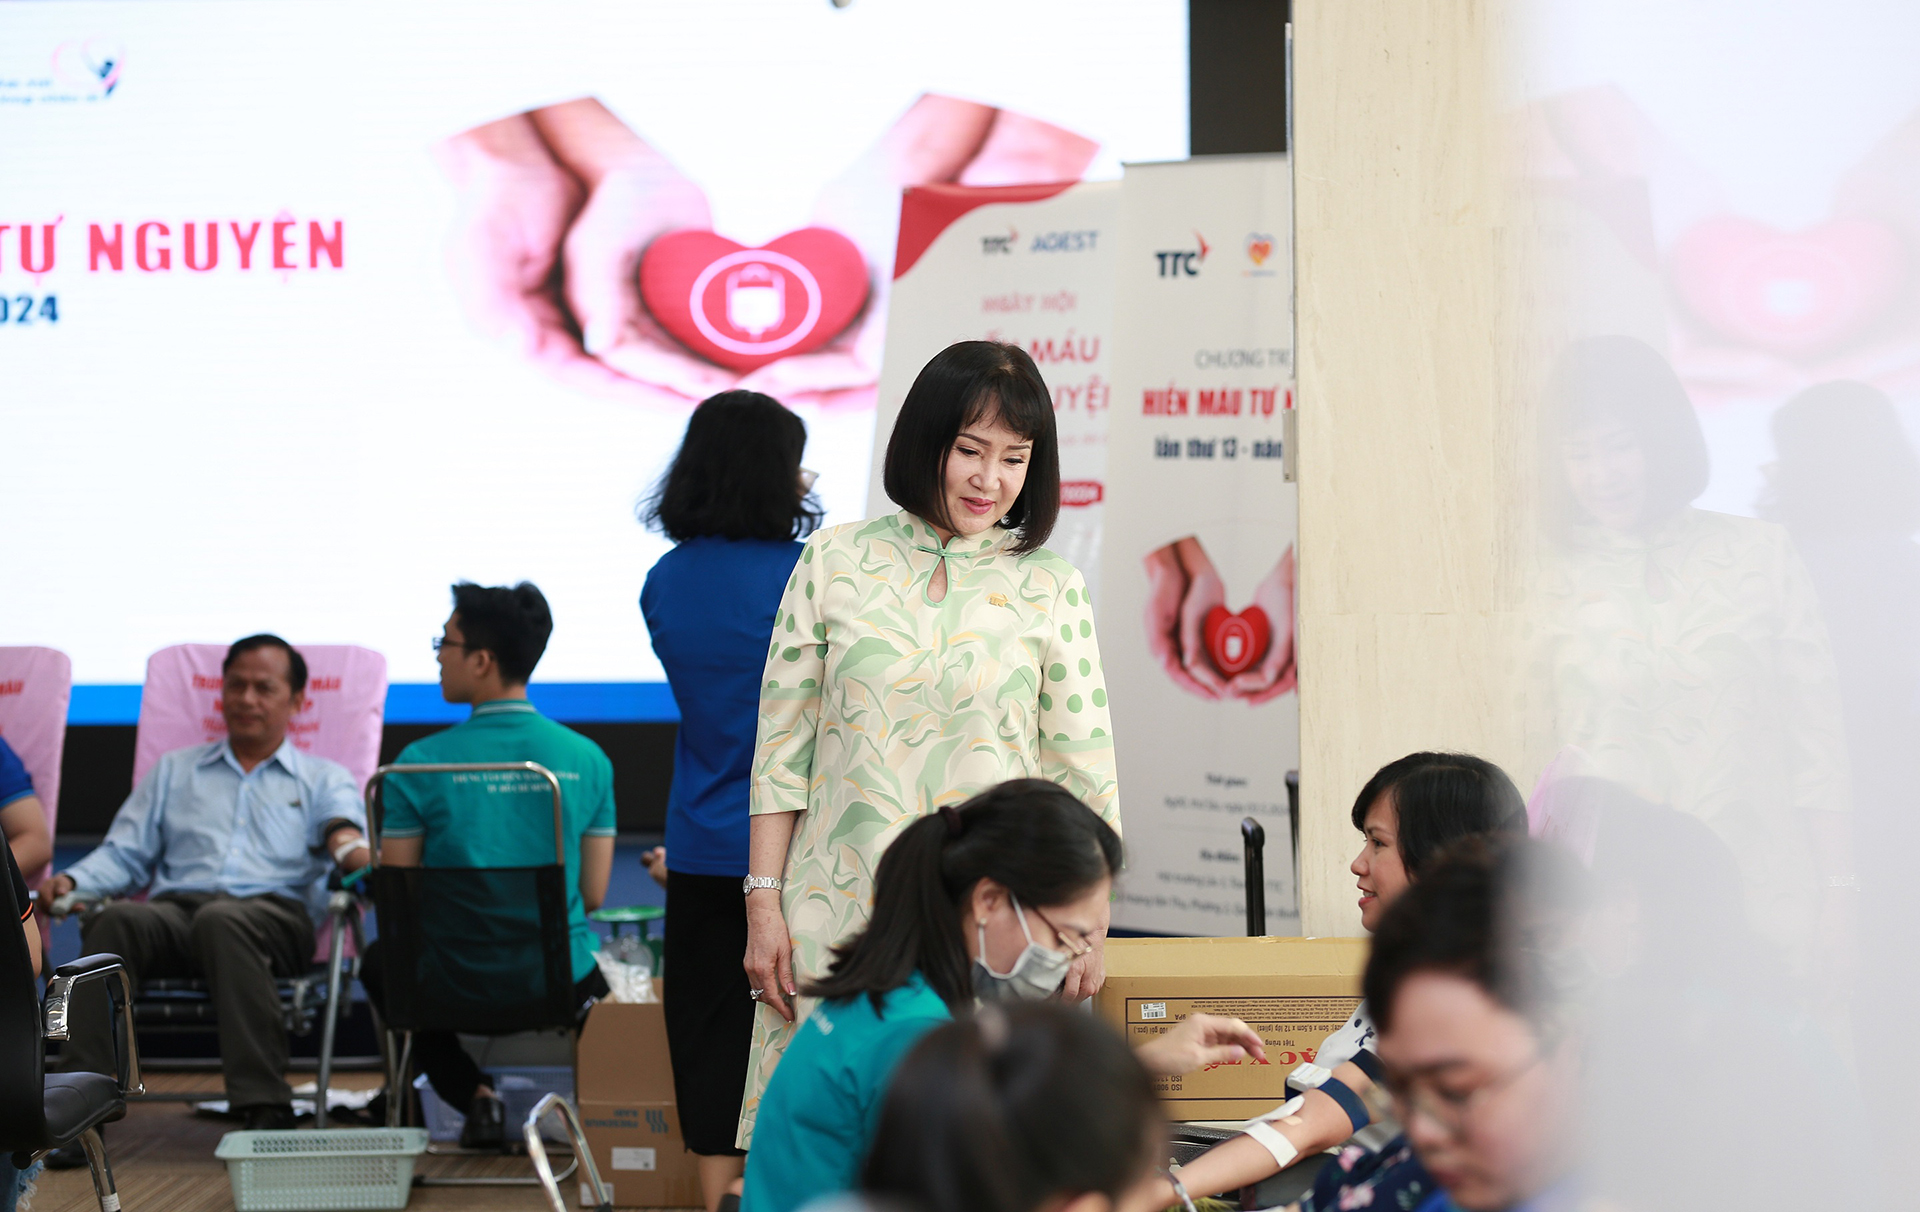 Bà Huỳnh Bích Ngọc - Phó Chủ tịch Thường trực, Tổng giám đốc Tập đoàn TTC trực tiếp động viên, gửi lời cảm ơn, khích lệ tinh thần người tham gia hiến máu